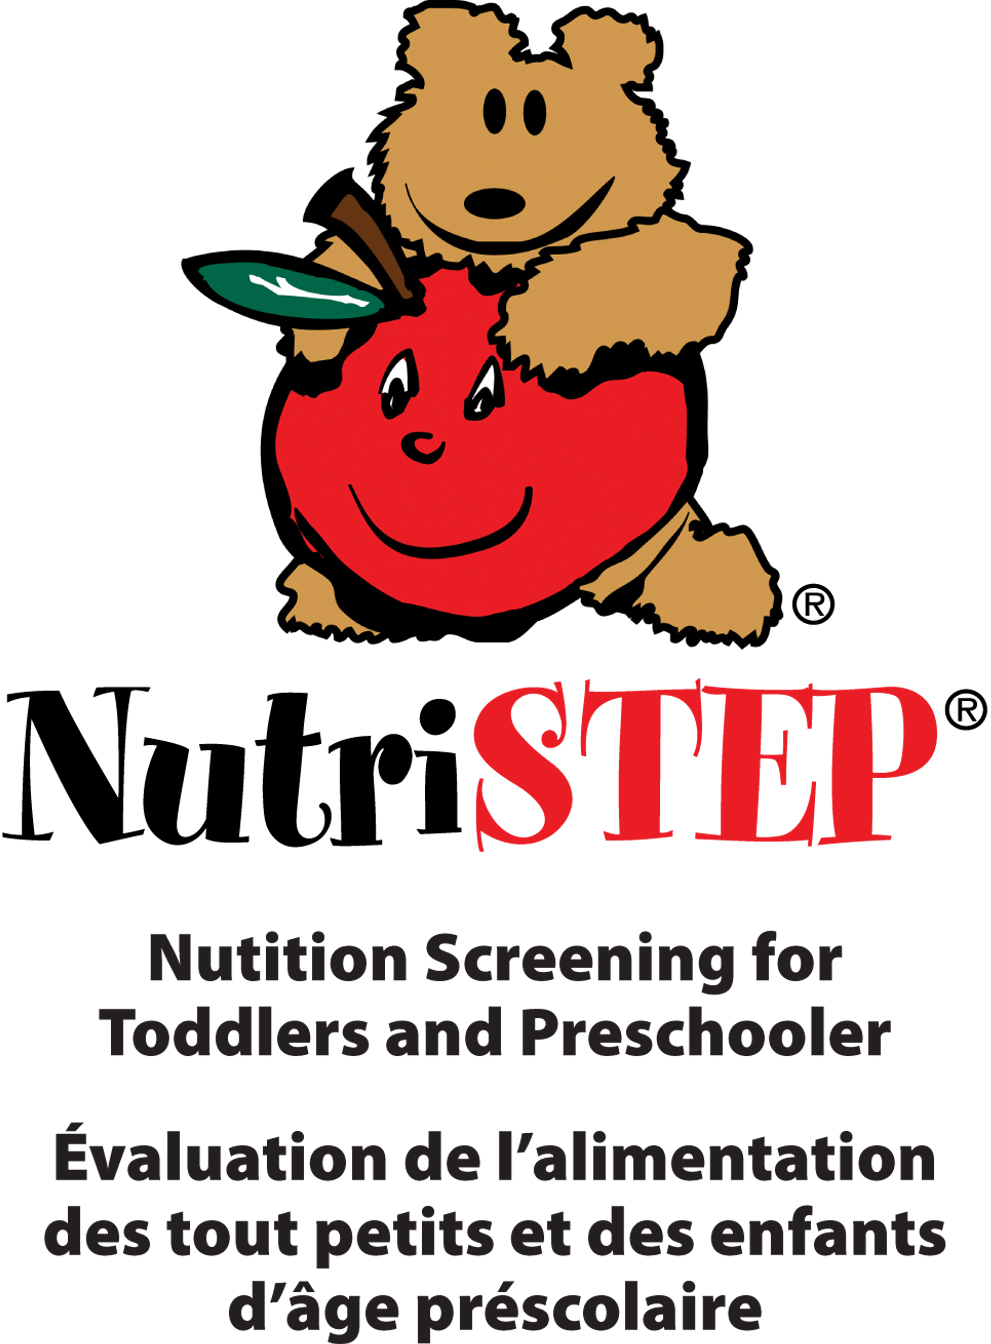 NutriSTEP® Logo